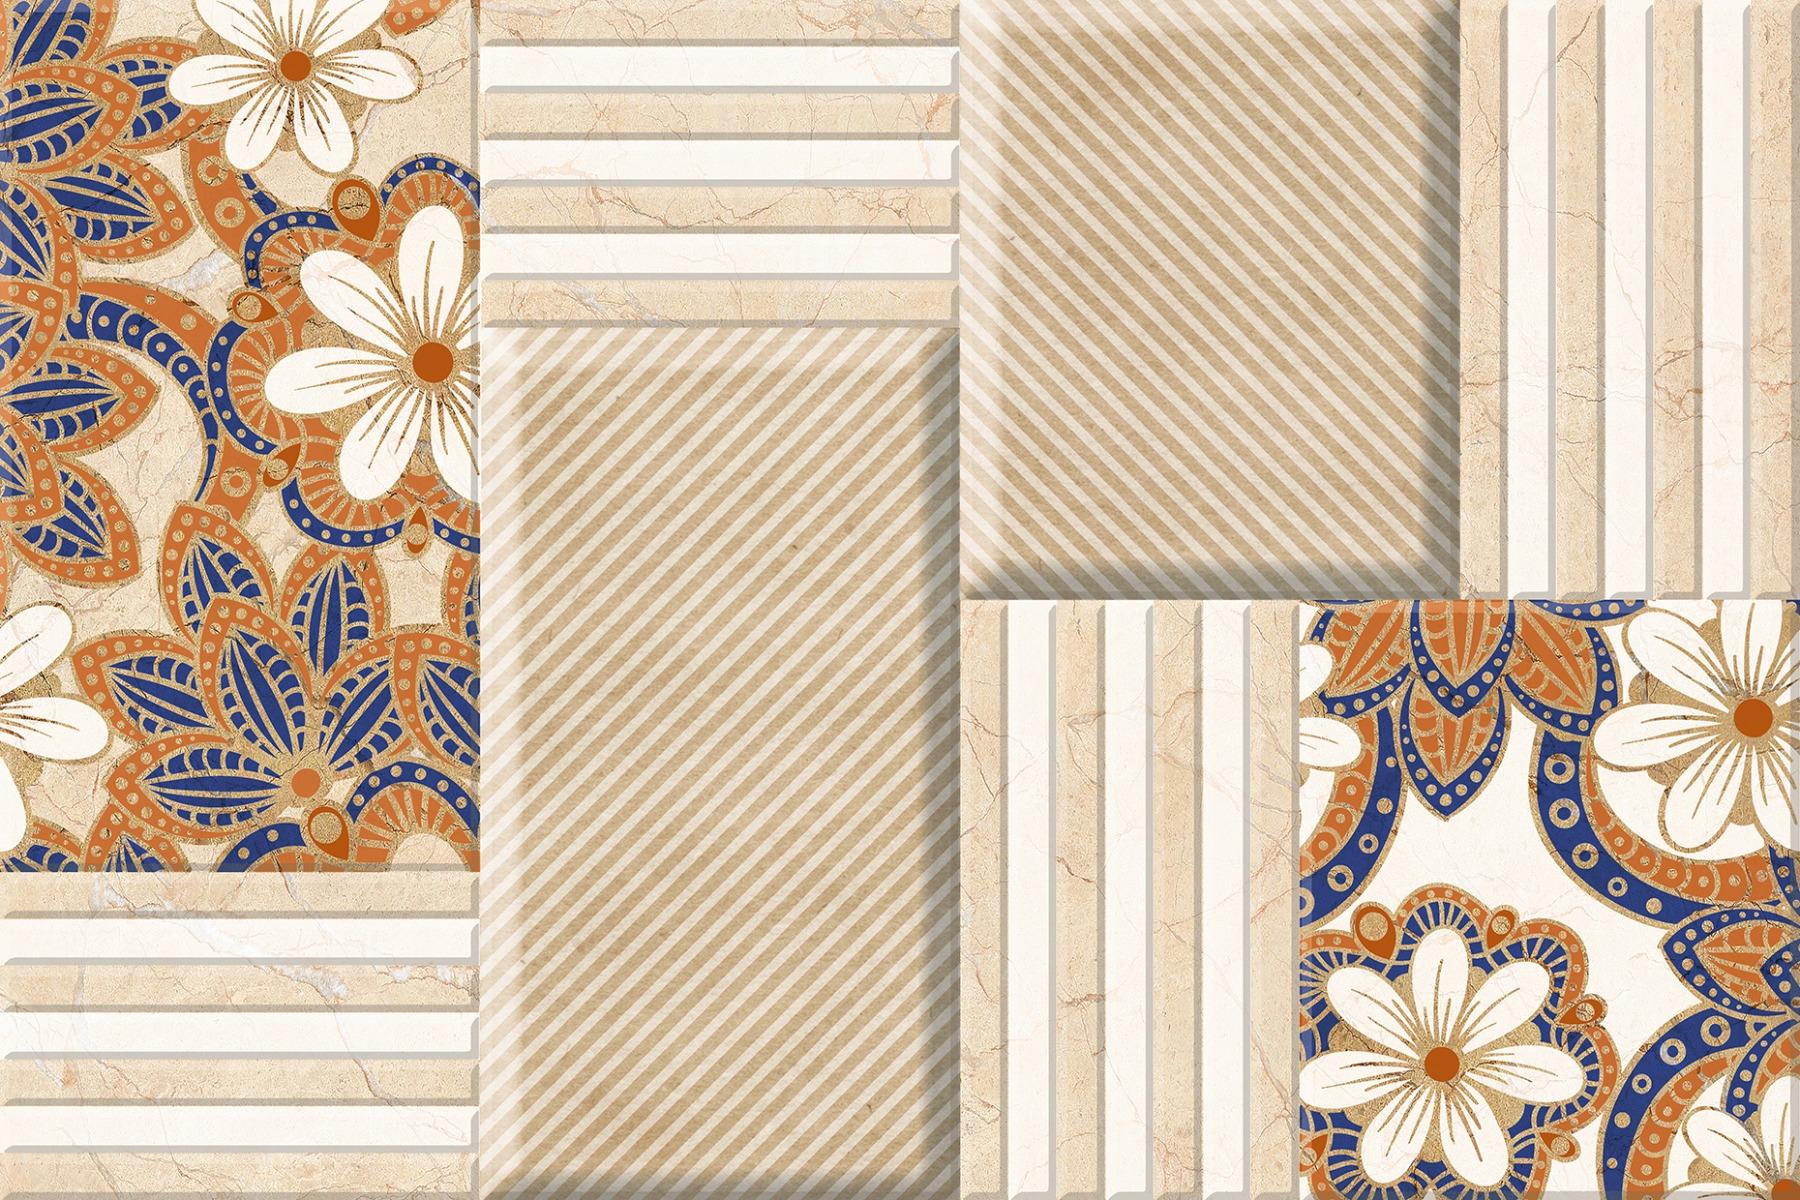 Flower Tiles for Bathroom Tiles, Kitchen Tiles, Balcony Tiles